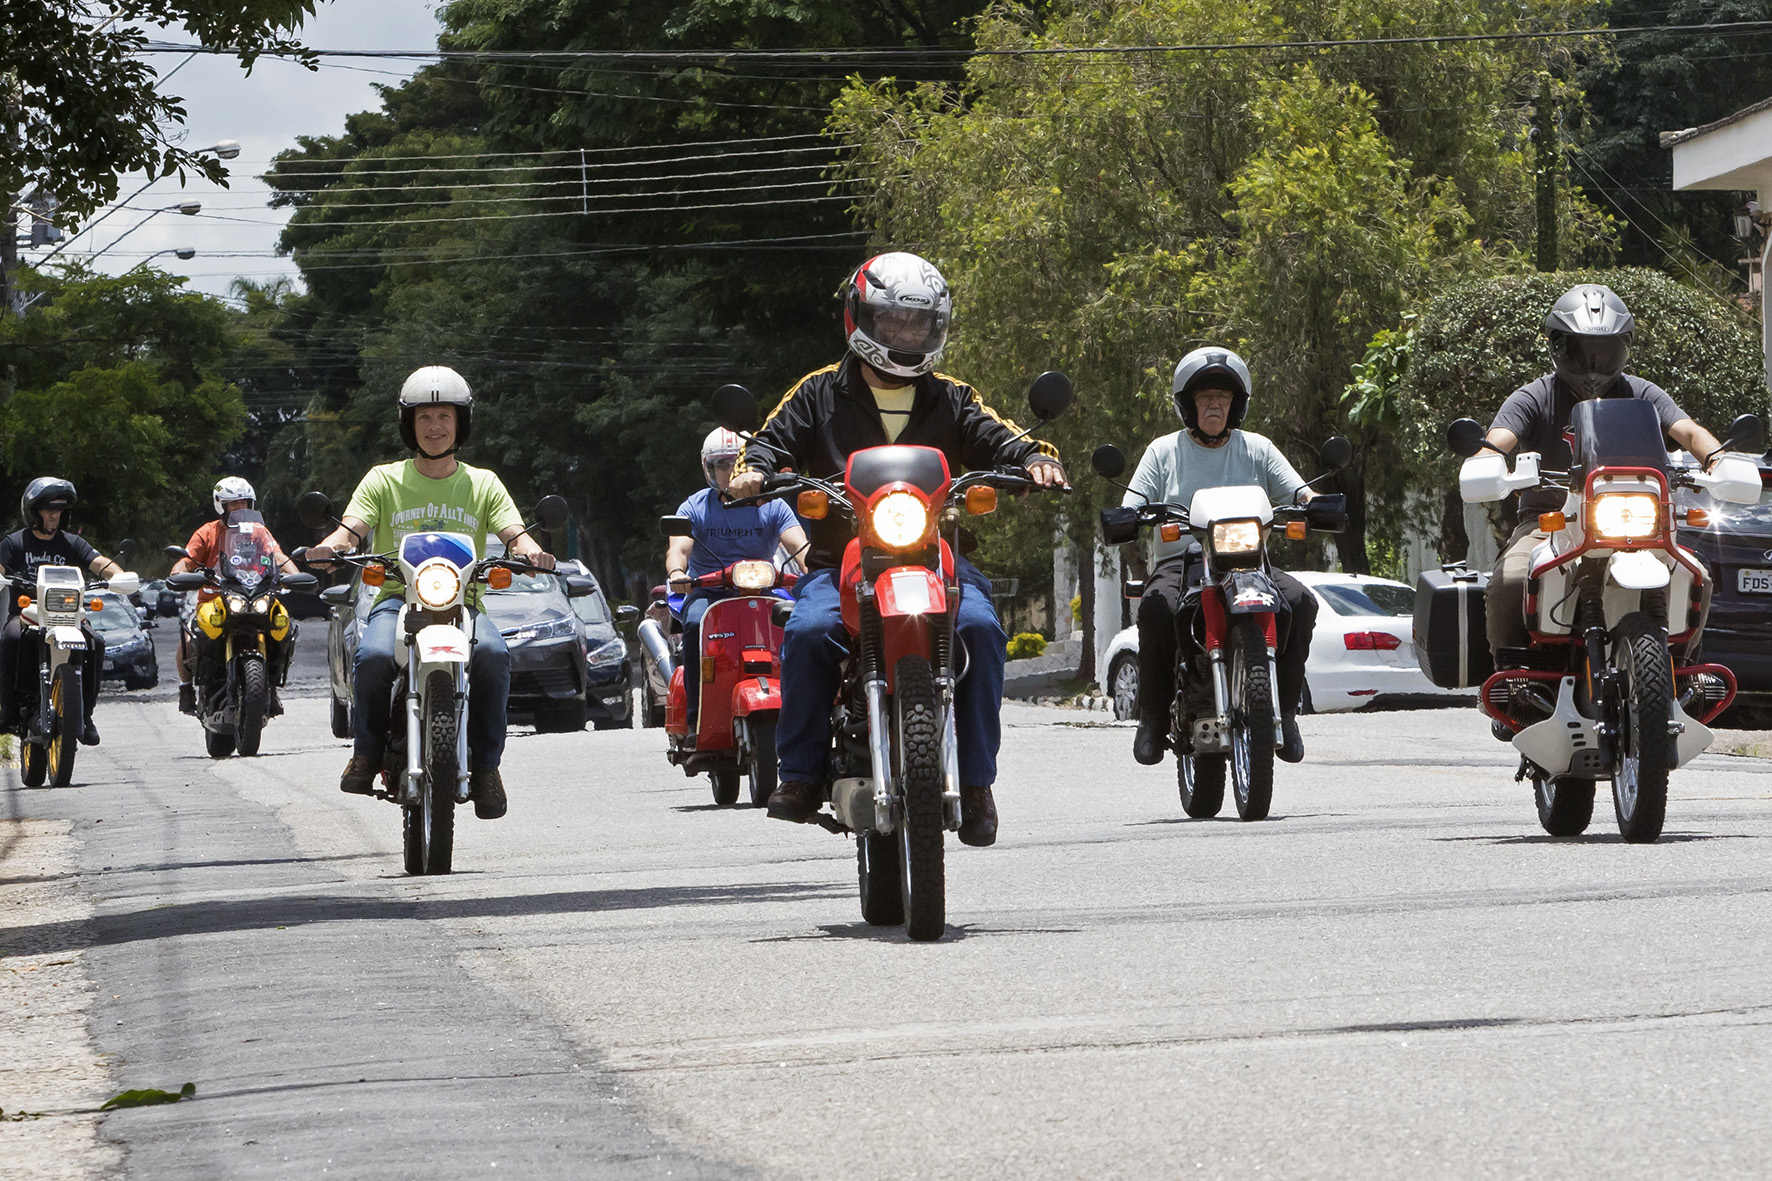  No Estado de São Paulo existem quase 1.900 motos com placas pretas